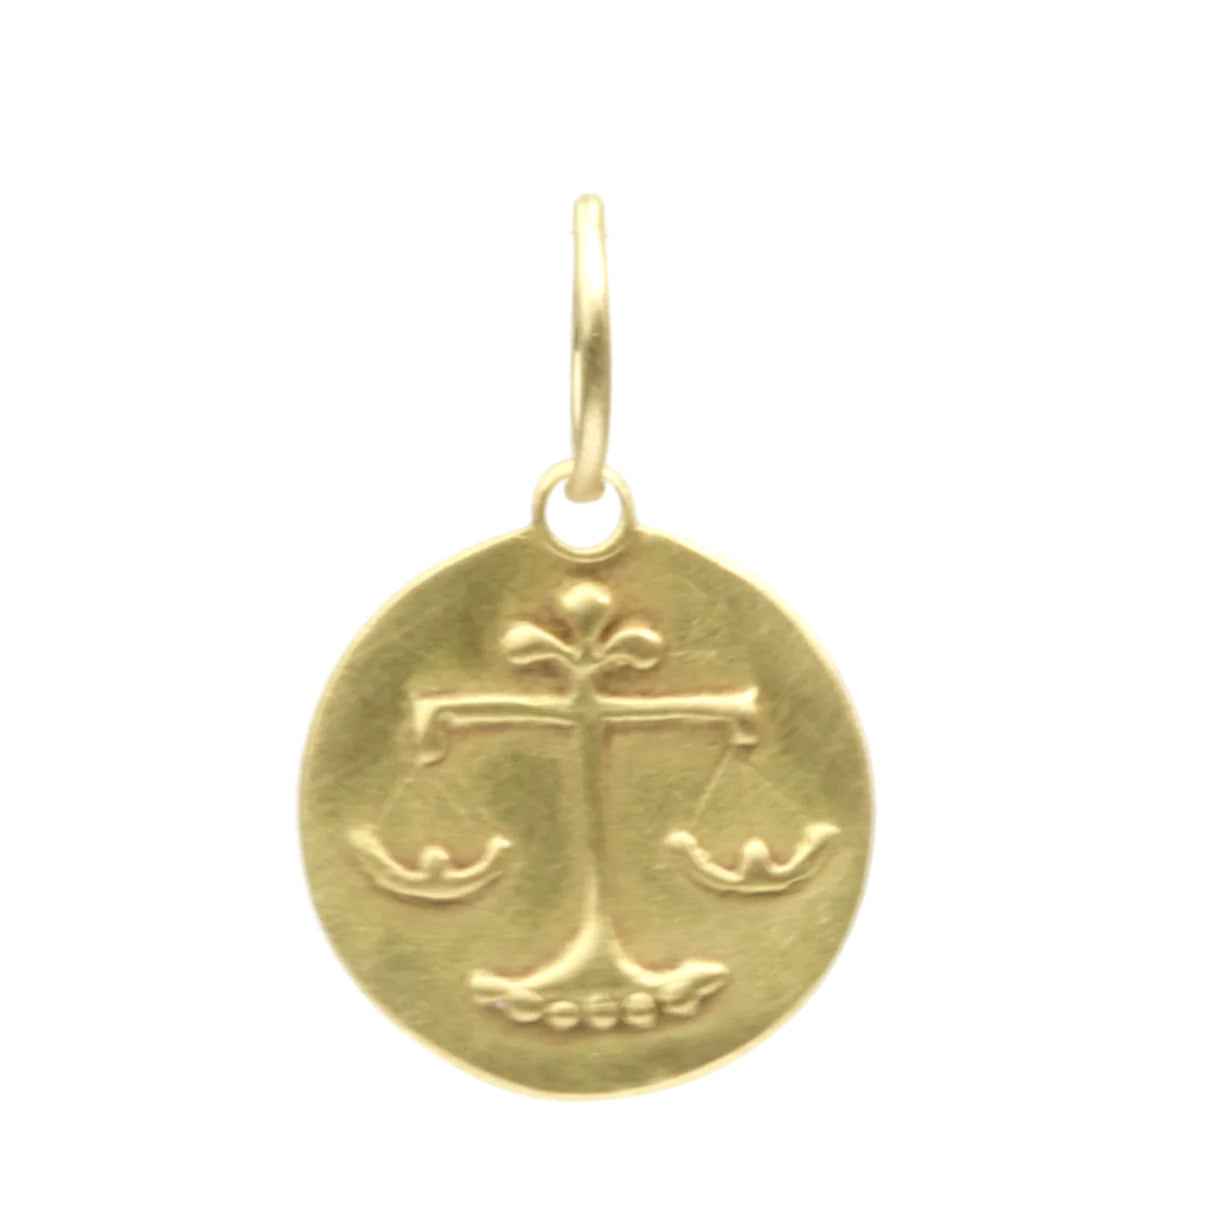 zodiac medal pendant necklace - libra